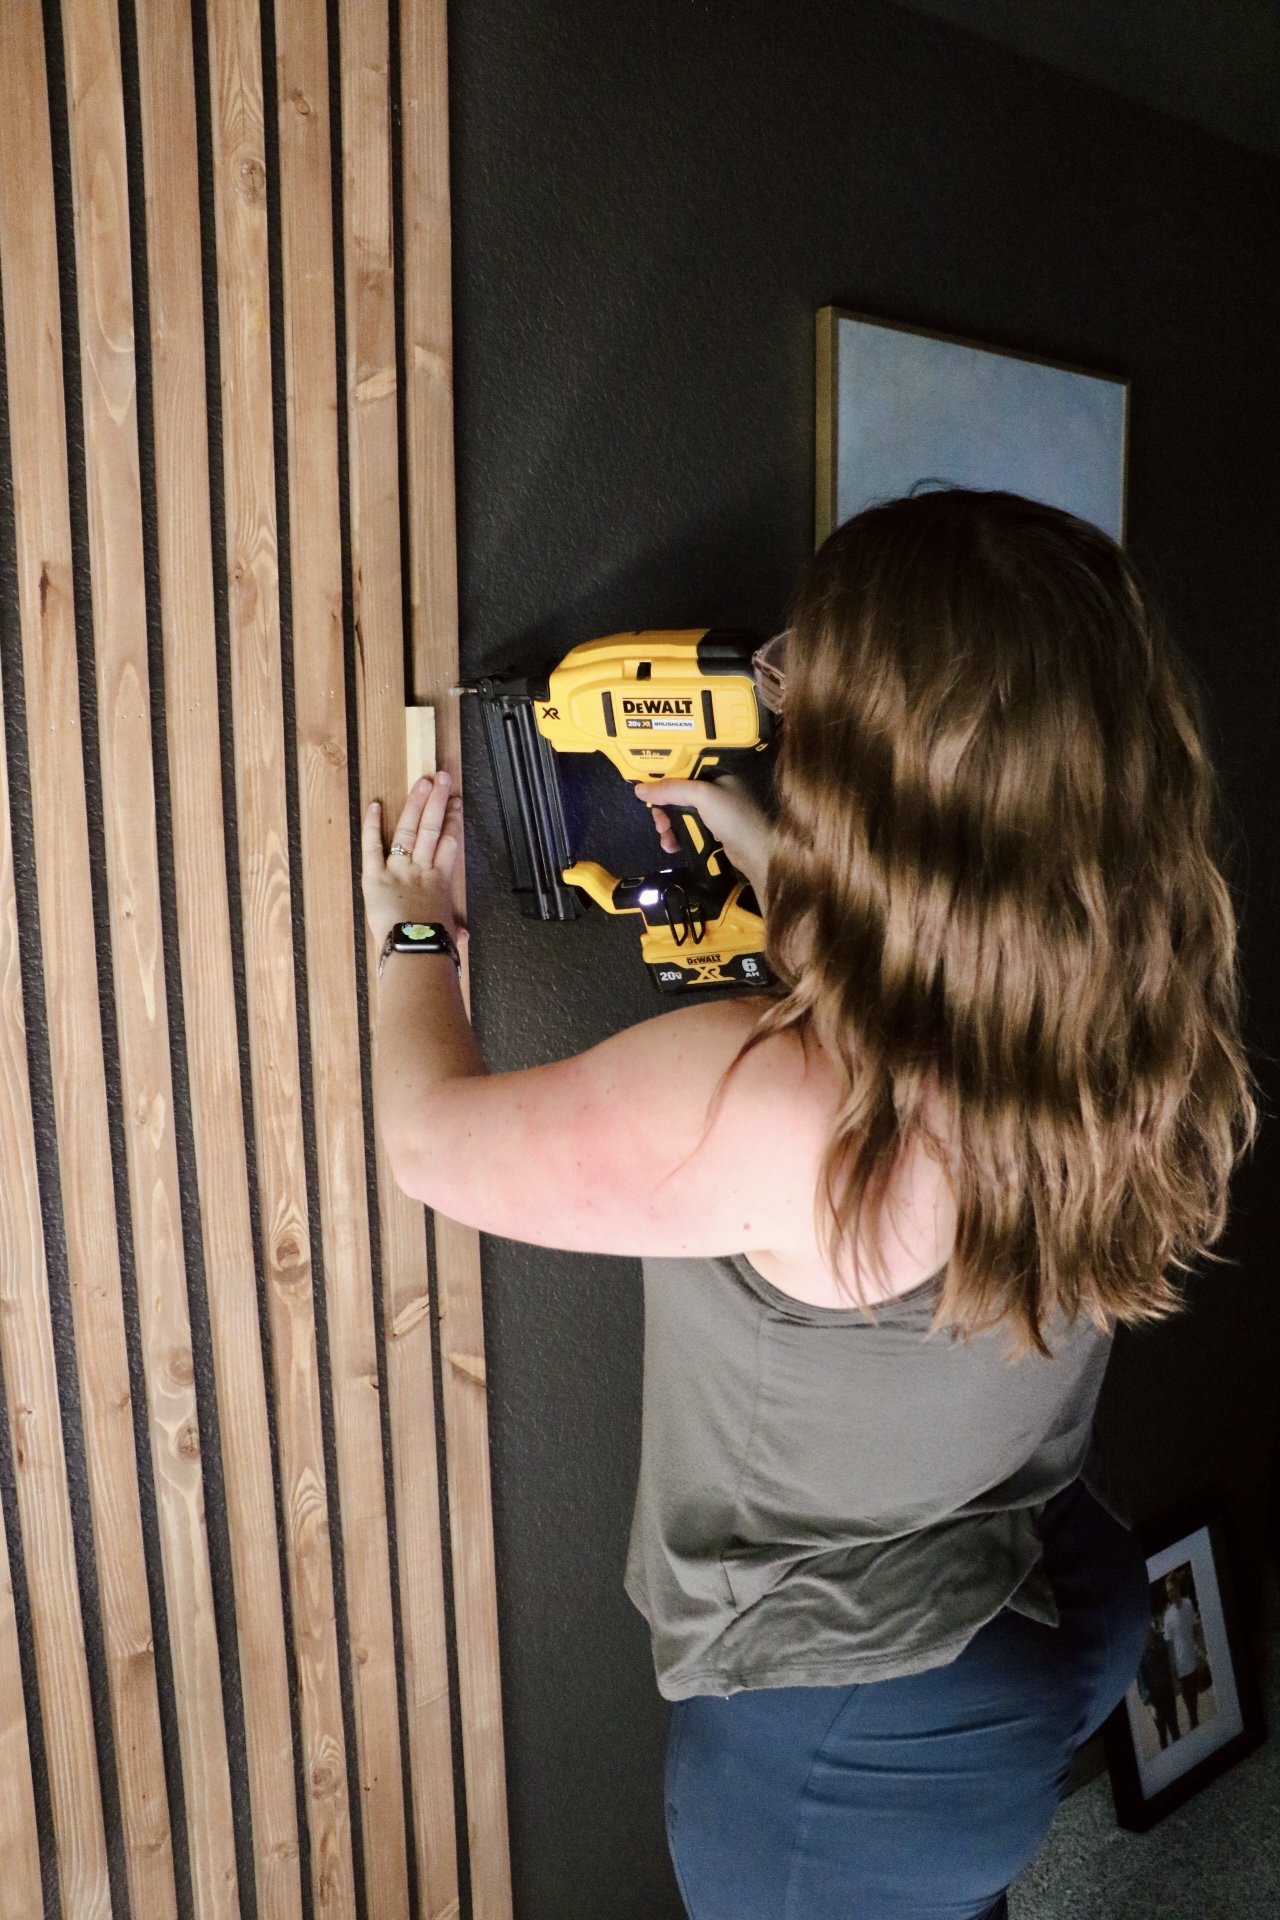 DIY Slat Wall — DIY DARLING